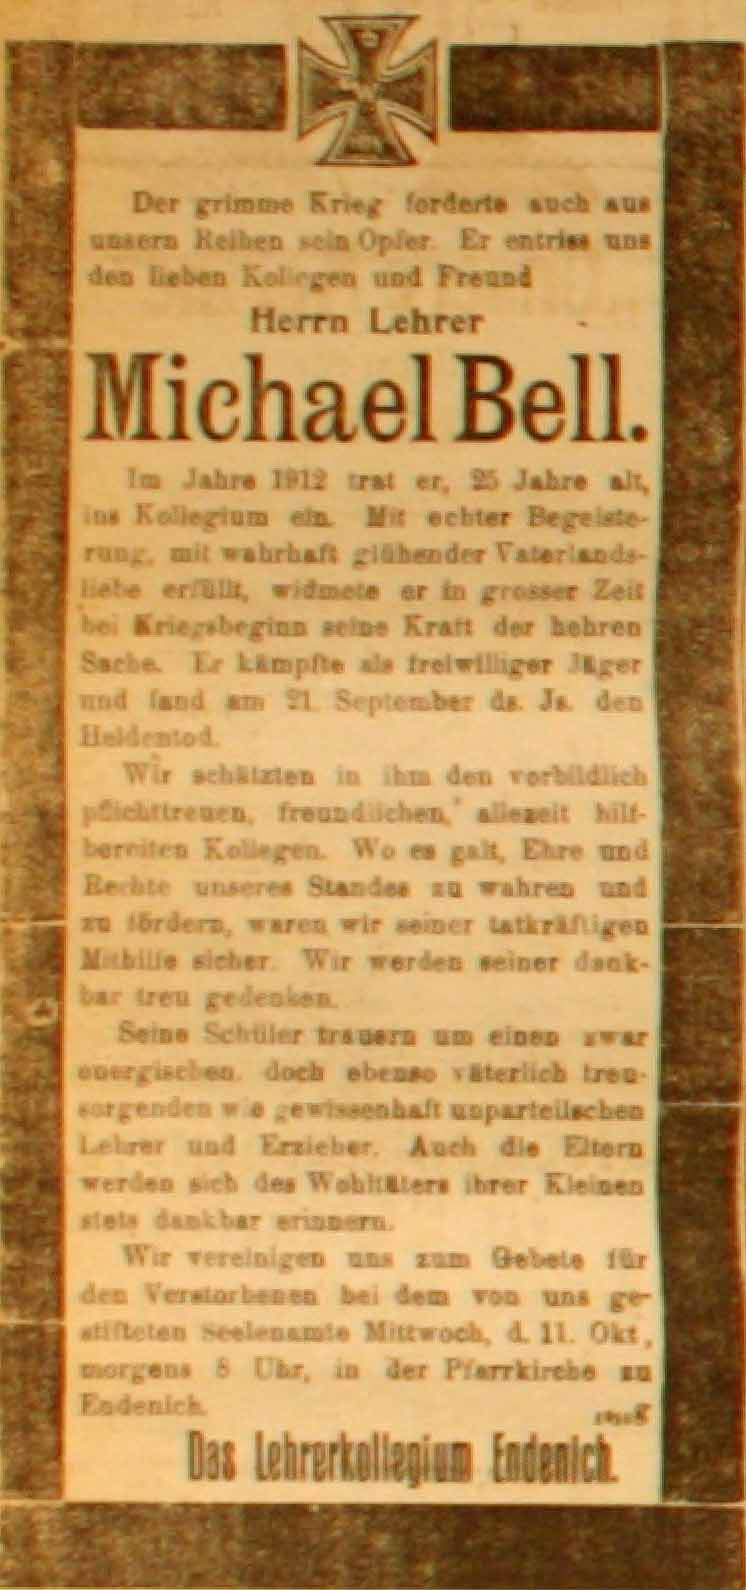 Anzeige in der Deutschen Reichs-Zeitung vom 10. Oktober 1916